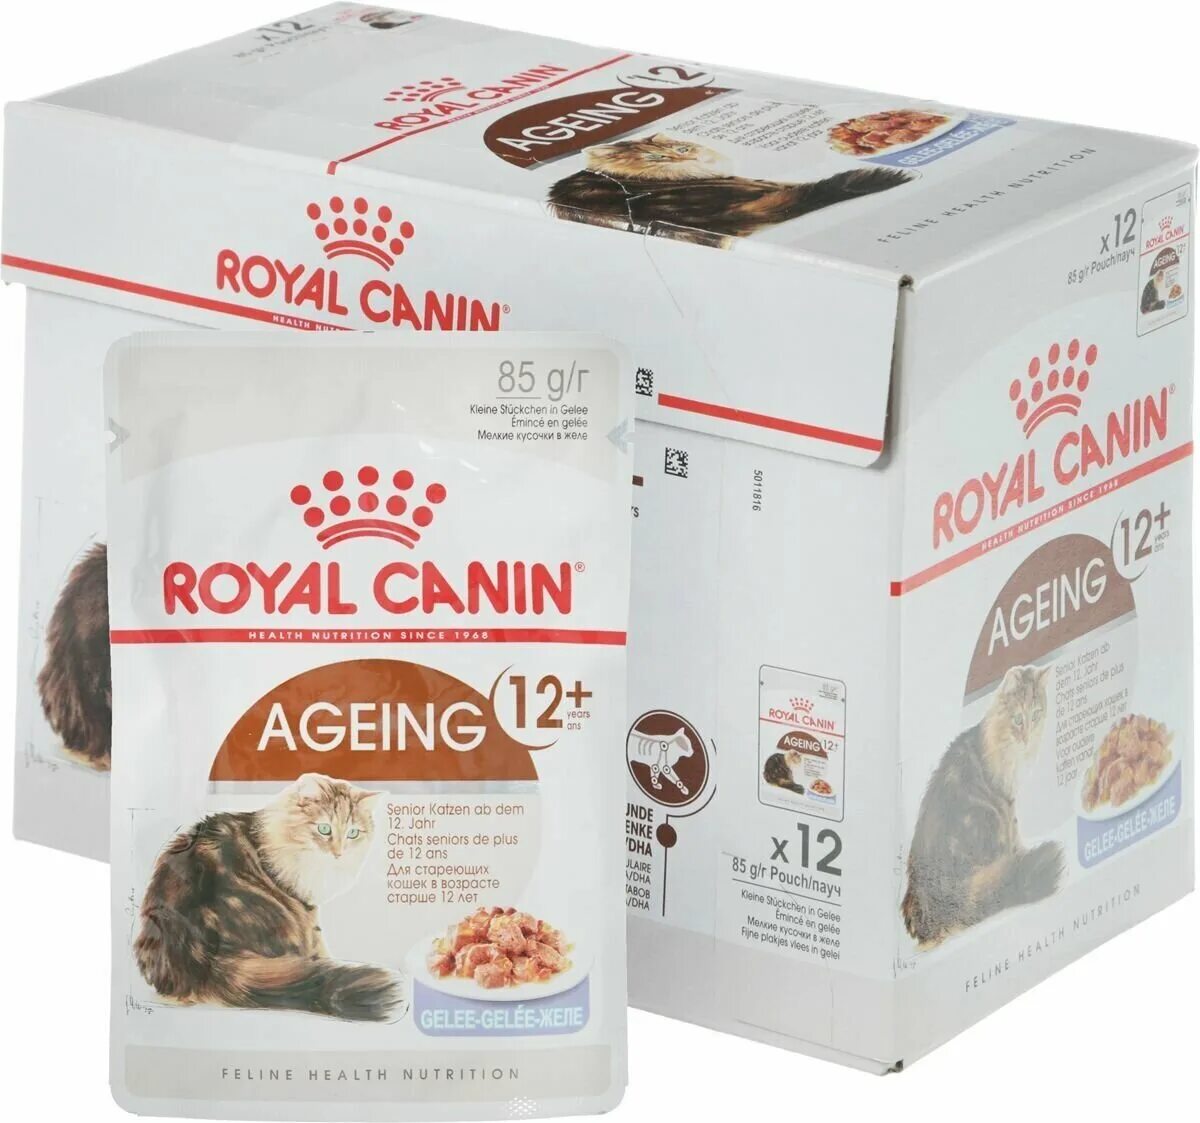 Royal canin в соусе для кошек. Корм Роял Канин для кошек 12+. Корм Роял Канин для шотландских кошек. Роял Канин для пожилых кошек 12+. Роял Канин 12+ для кошек сухой.